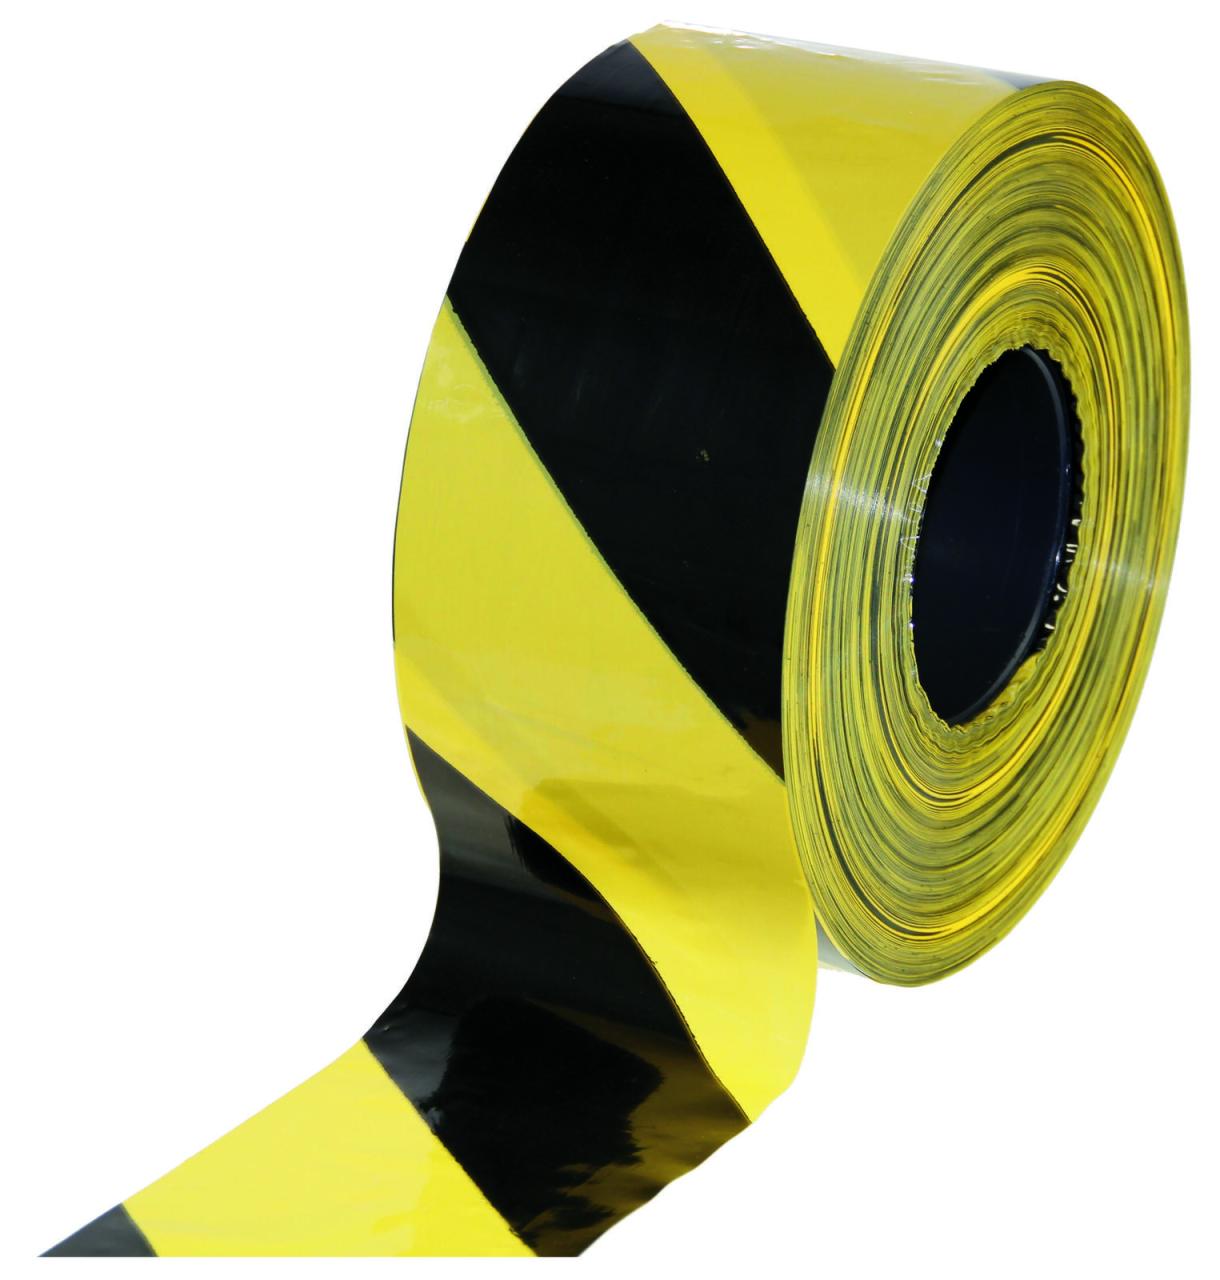 Absperrband 80 mm x 500 m gelb, schwarz von NEUTRAL